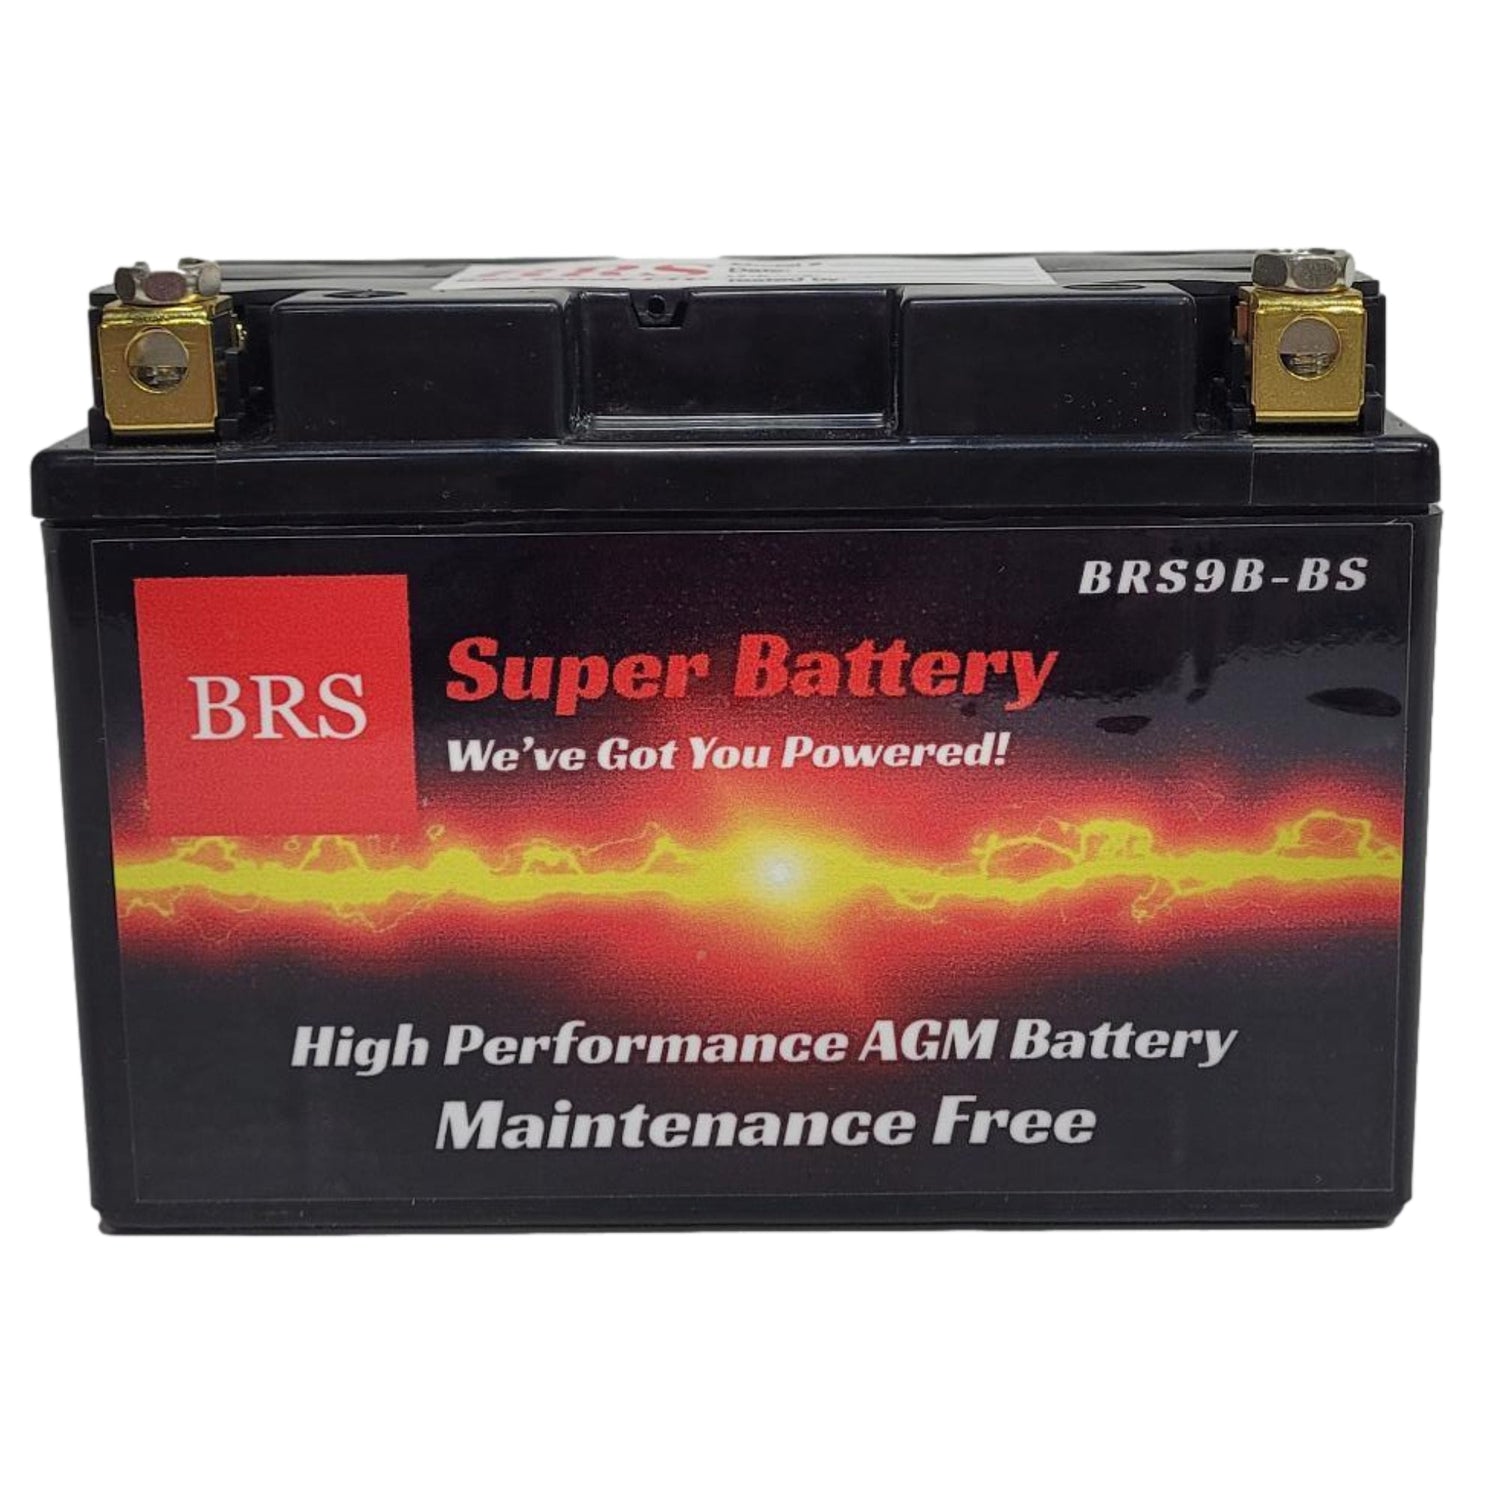 BRS9B-BS 12v 9AH 140CCA 30 Day Warranty - BRS Super Battery